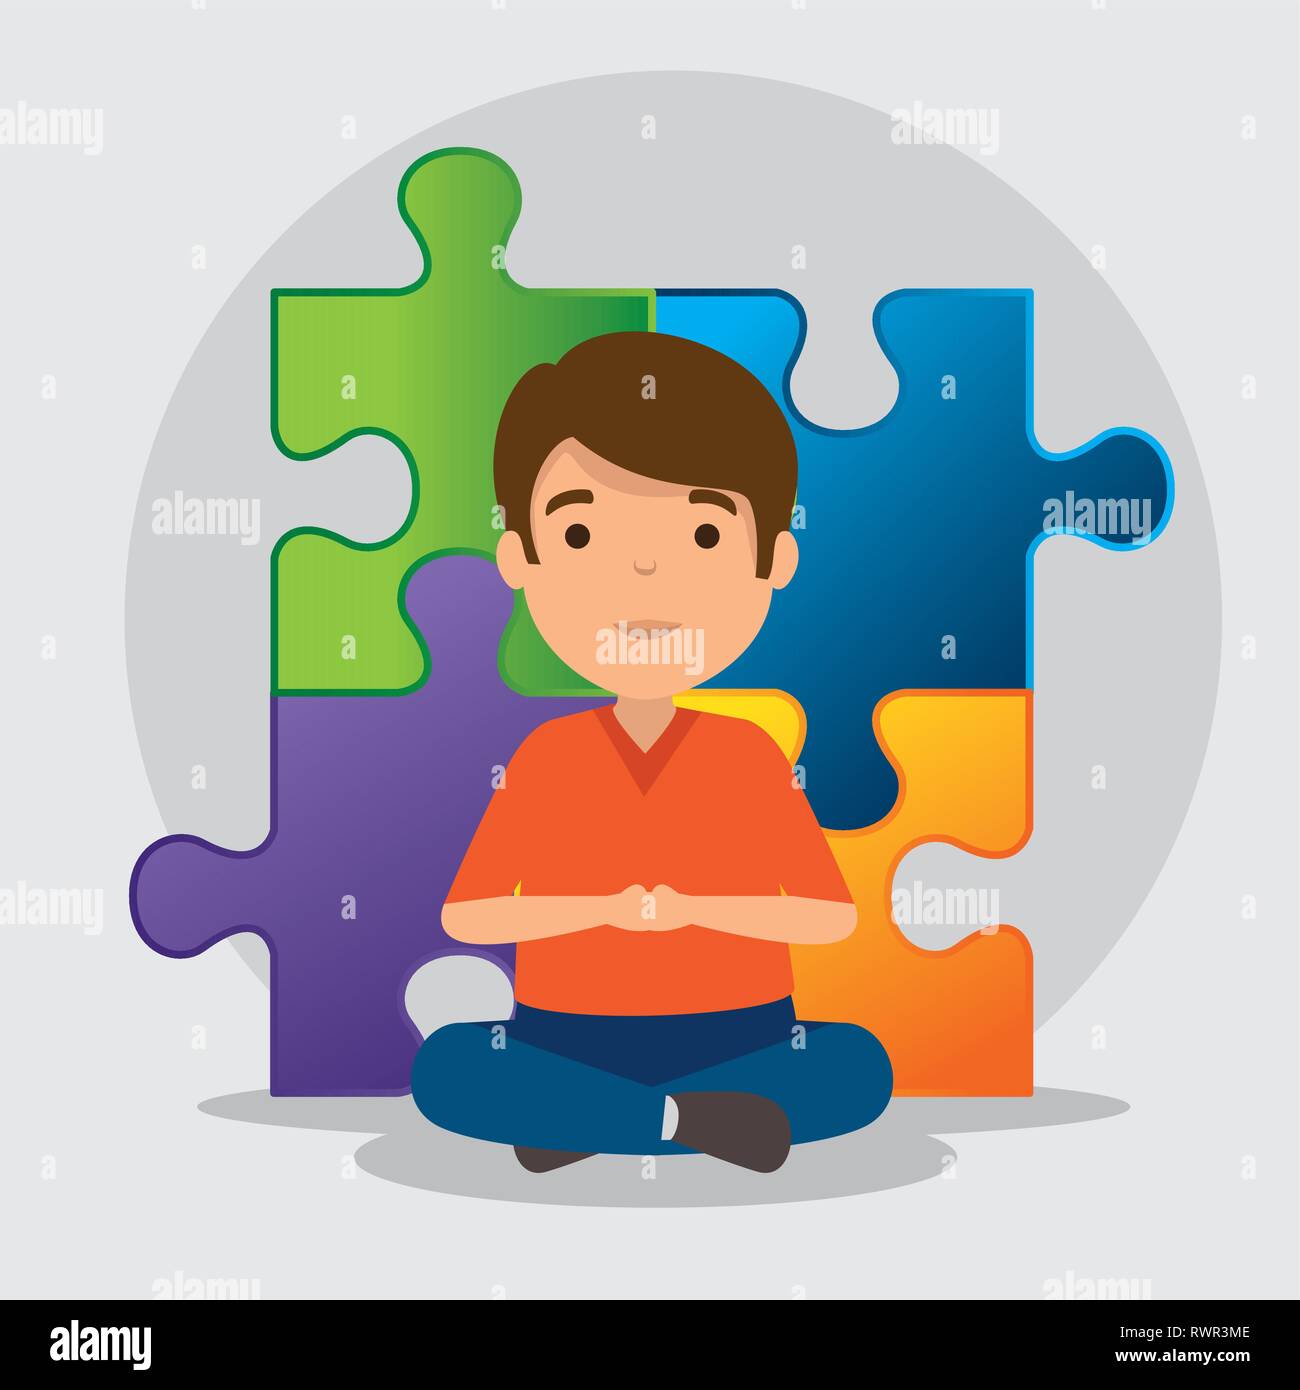 puzzles for autistic child